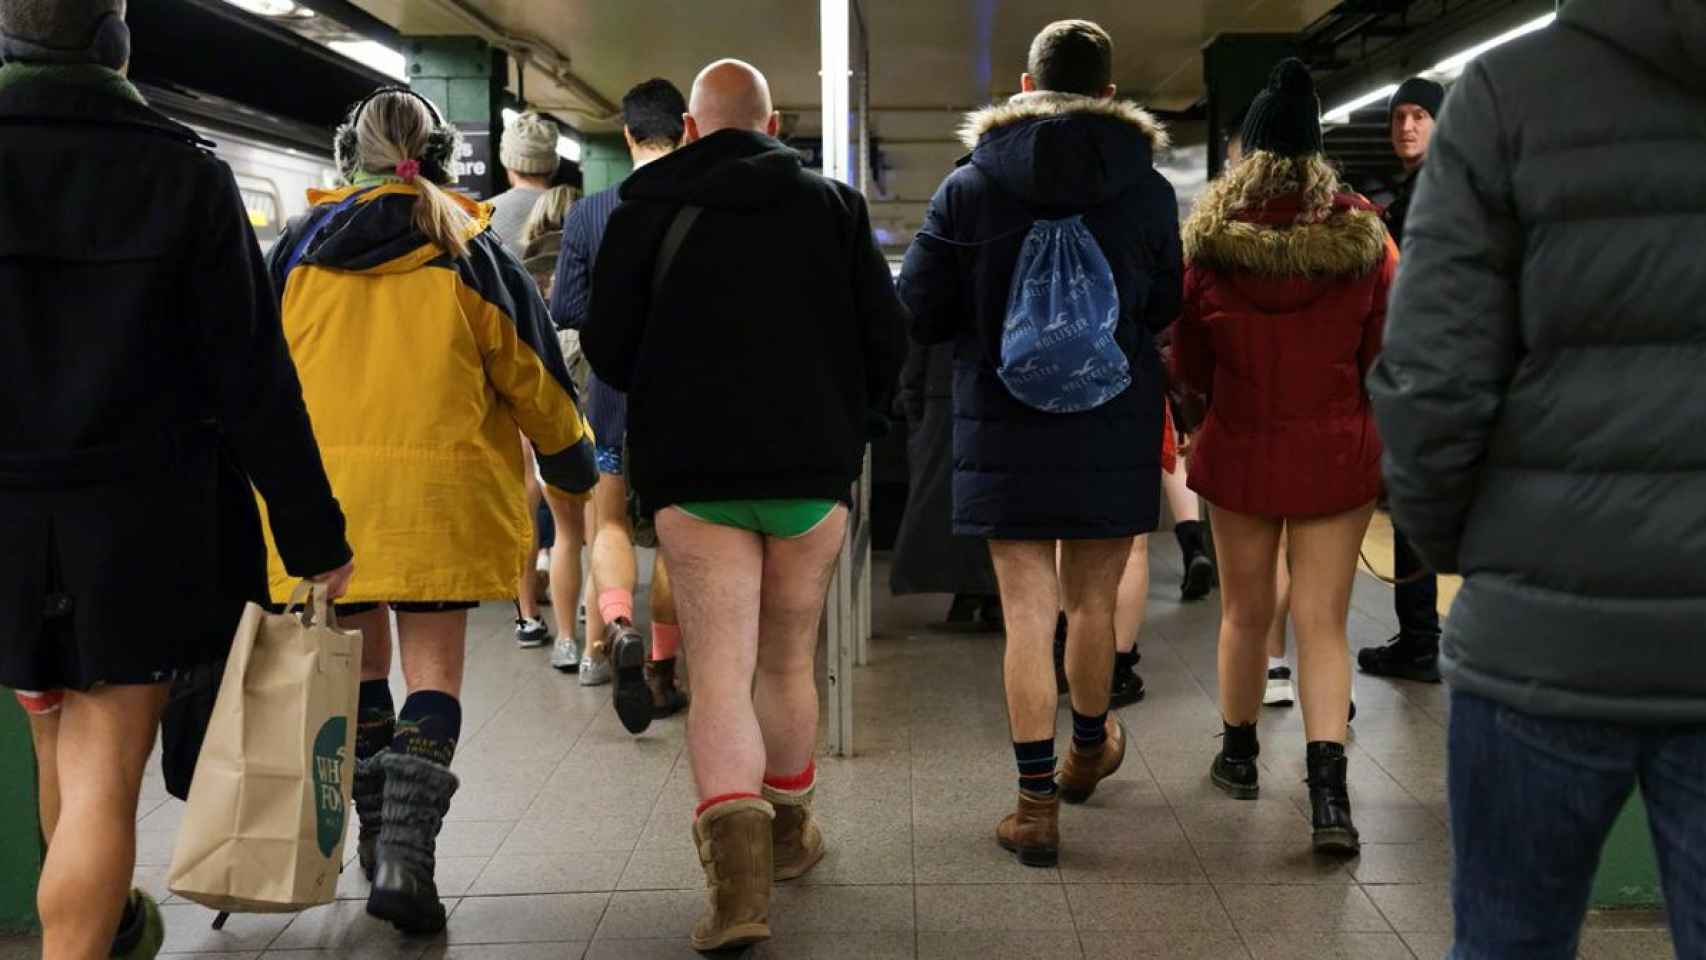 El domingo lo raro en el metro de Nueva York era llevar los pantalones puestos